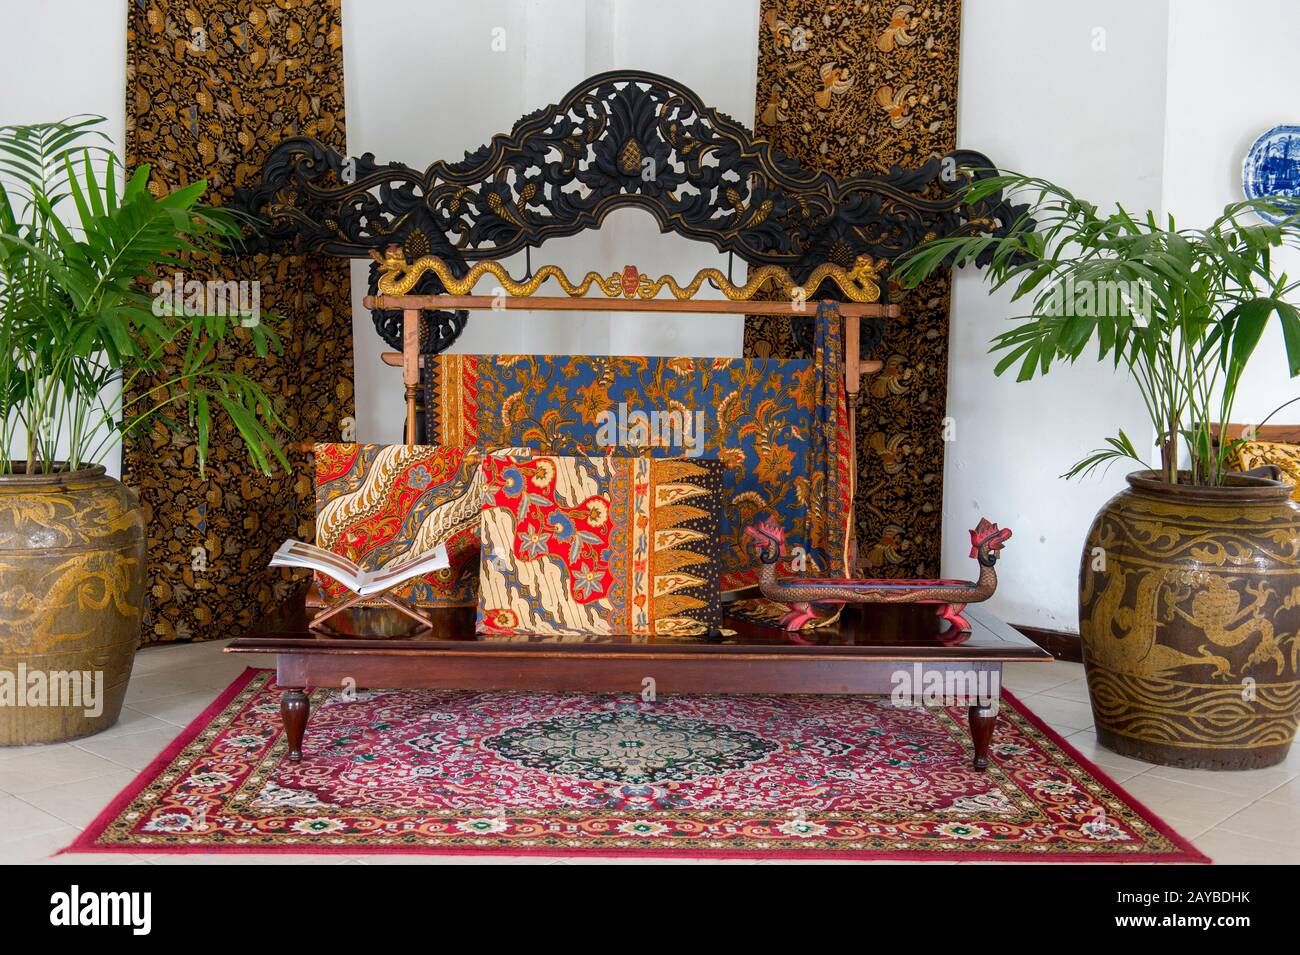 Des batiks élaborés sont exposés à la boutique Danar Hadi de Solo (Surakarta), une ville de Java, Indonésie. Banque D'Images